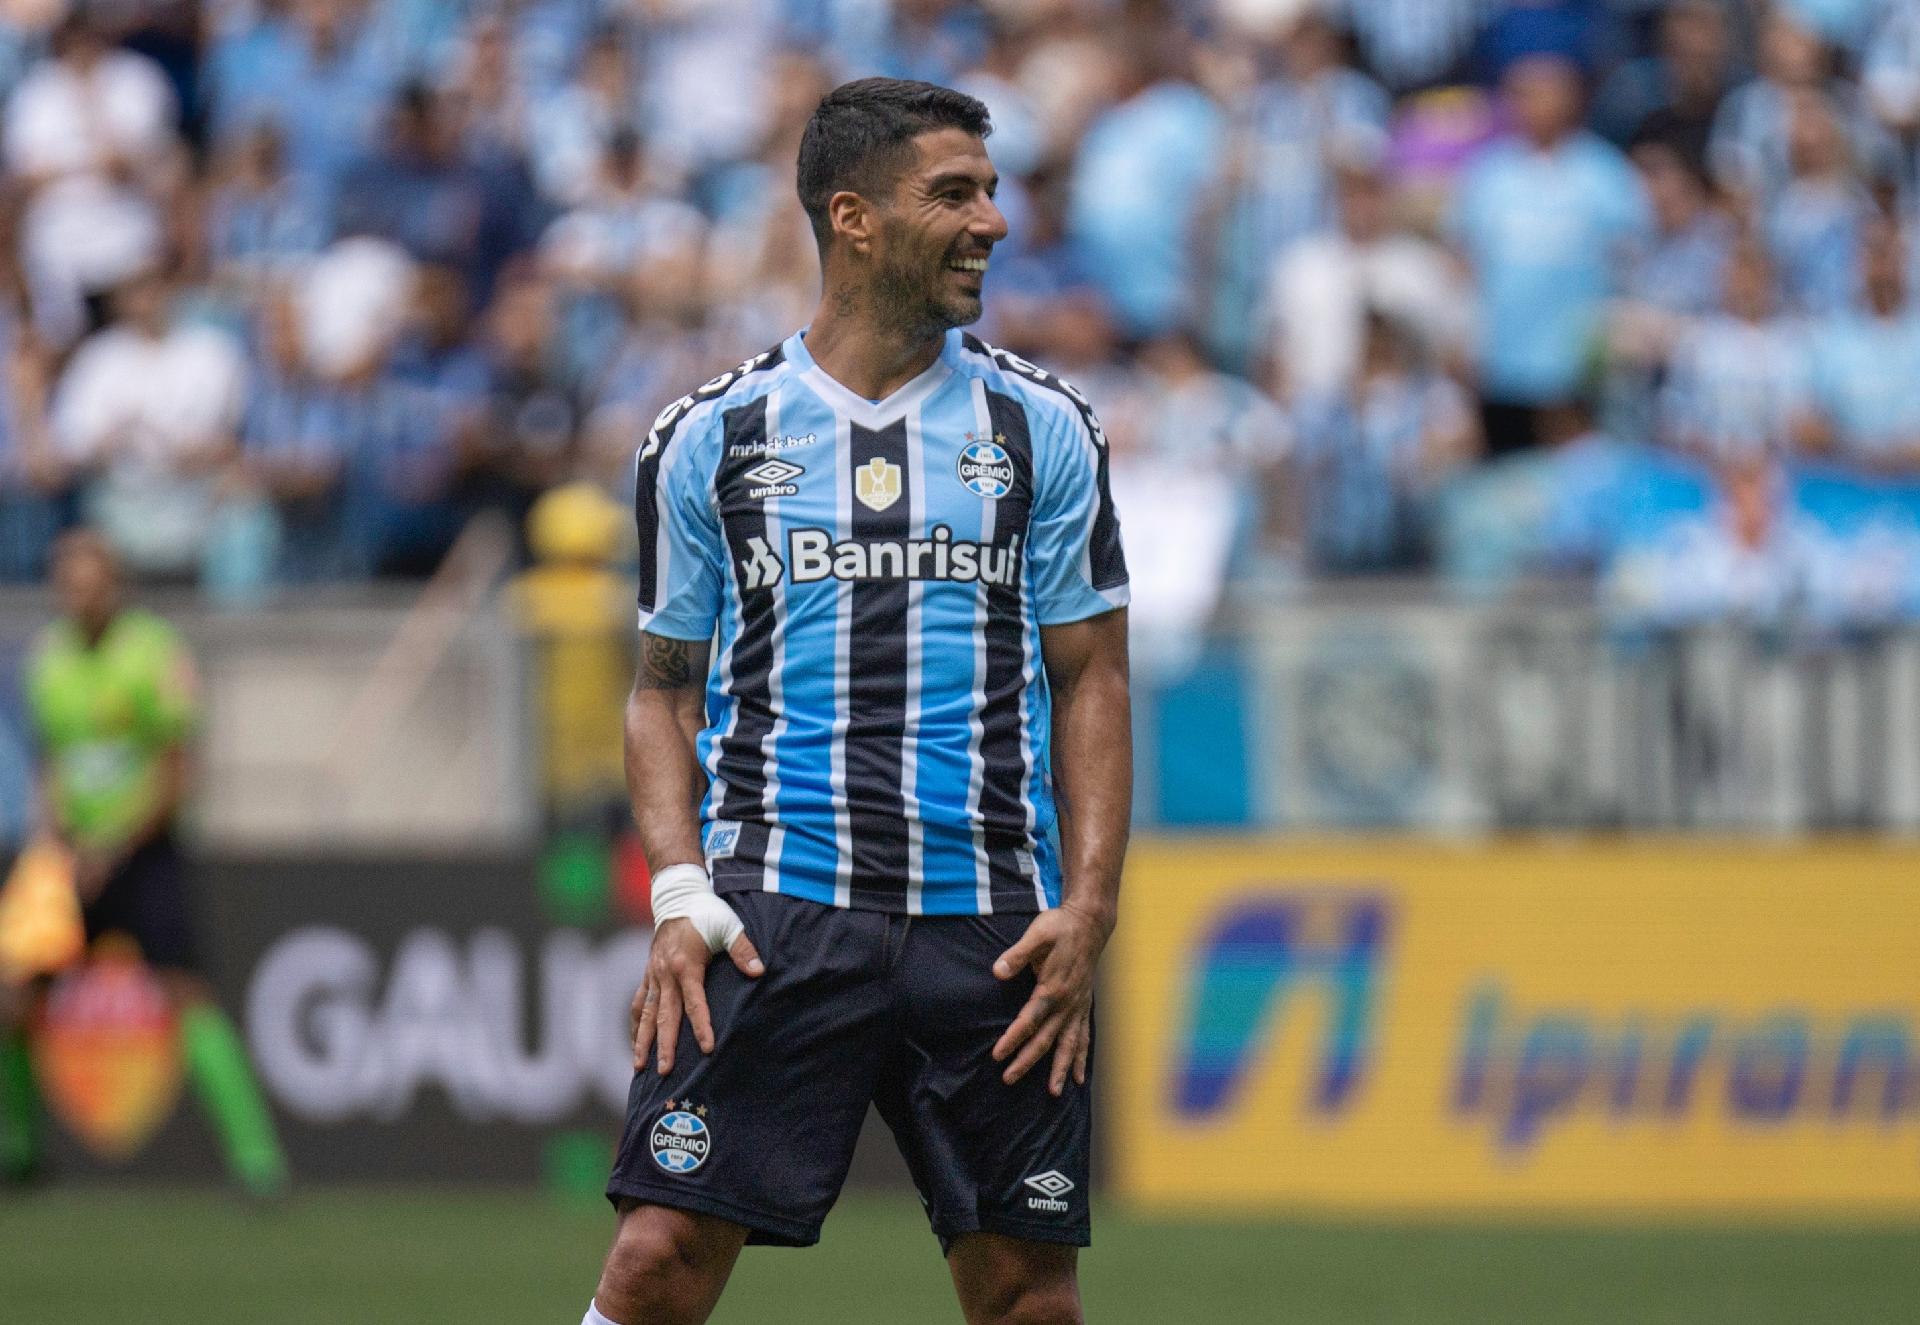 Grêmio Novorizontino apresenta Esportes da Sorte como novo